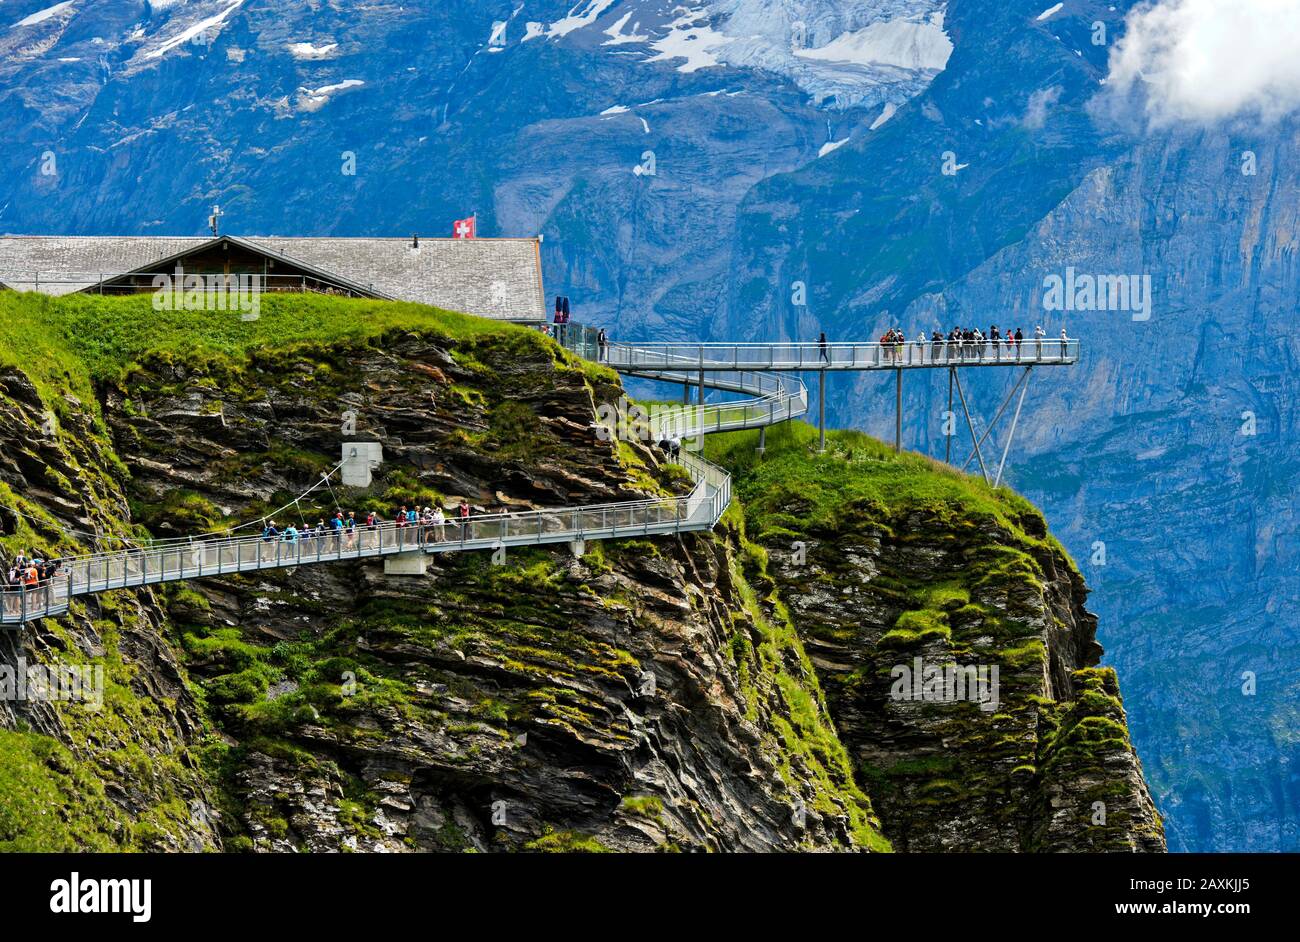 Sentier de montagne et plate-forme First Cliff Walk présenté par Tissot contre les parois rocheuses des Alpes bernoises, Grindelwald, Oberland bernois, Suisselan Banque D'Images